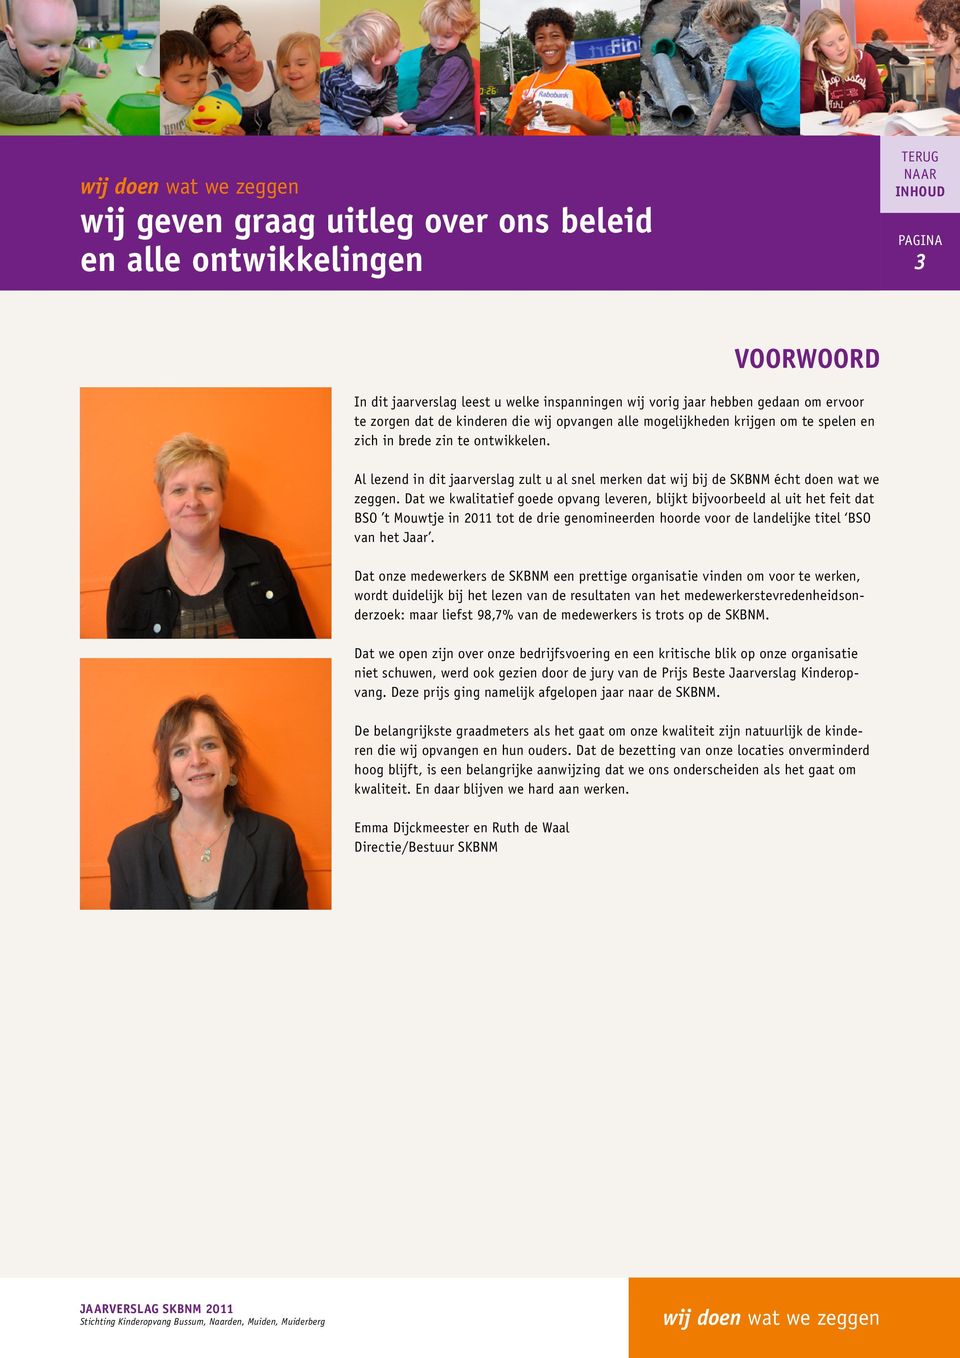 Dat we kwalitatief goede opvang leveren, blijkt bijvoorbeeld al uit het feit dat BSO t Mouwtje in 2011 tot de drie genomineerden hoorde voor de landelijke titel BSO van het Jaar.